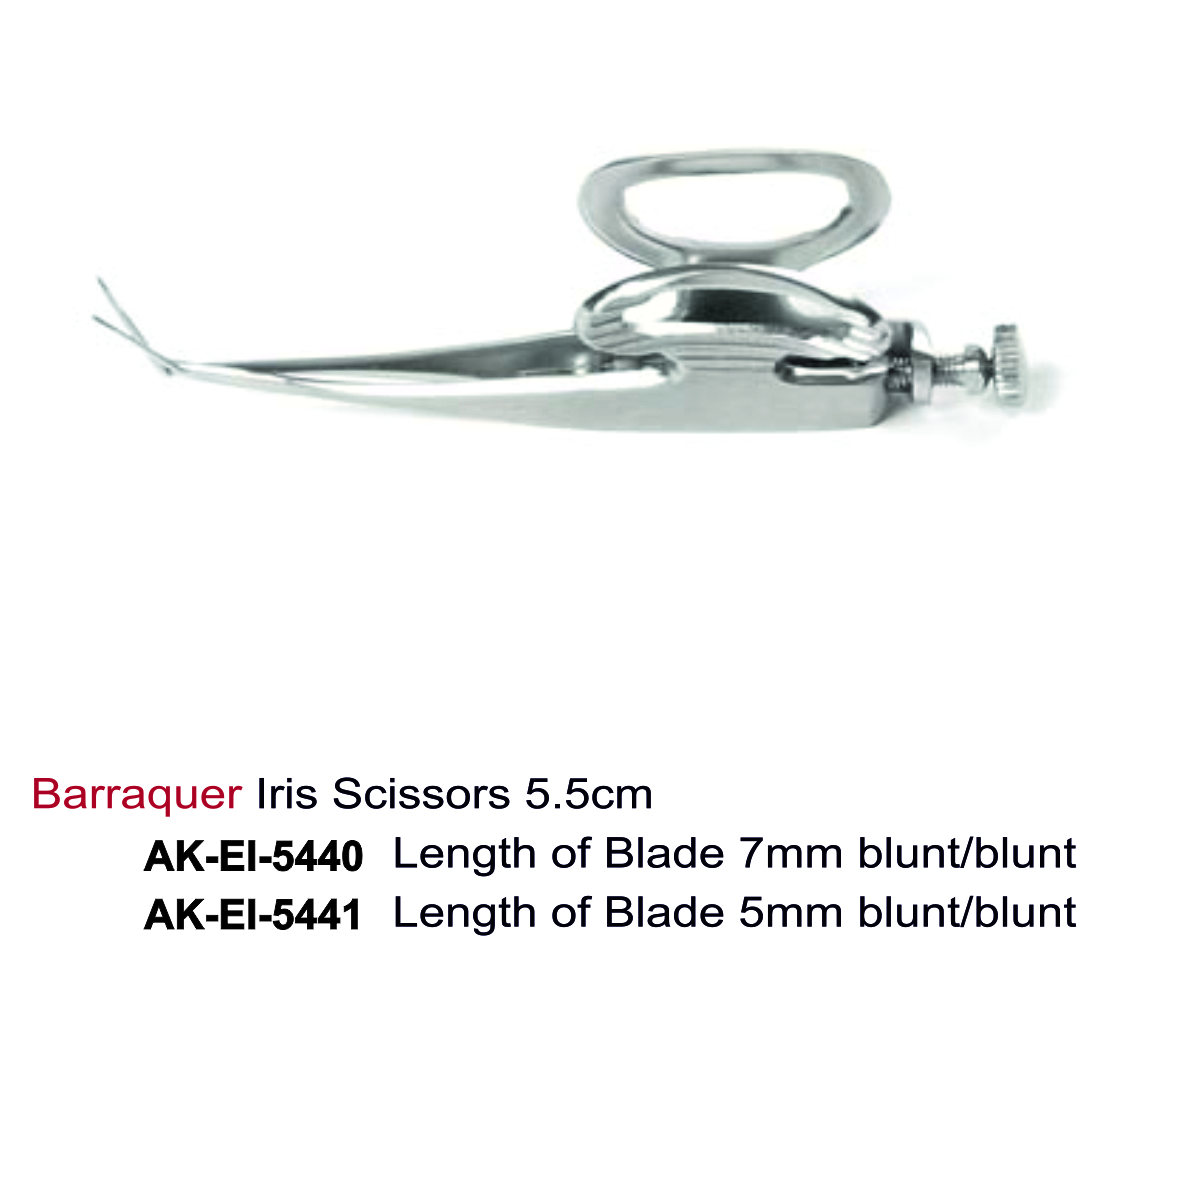 Barraquer Iris Scissors